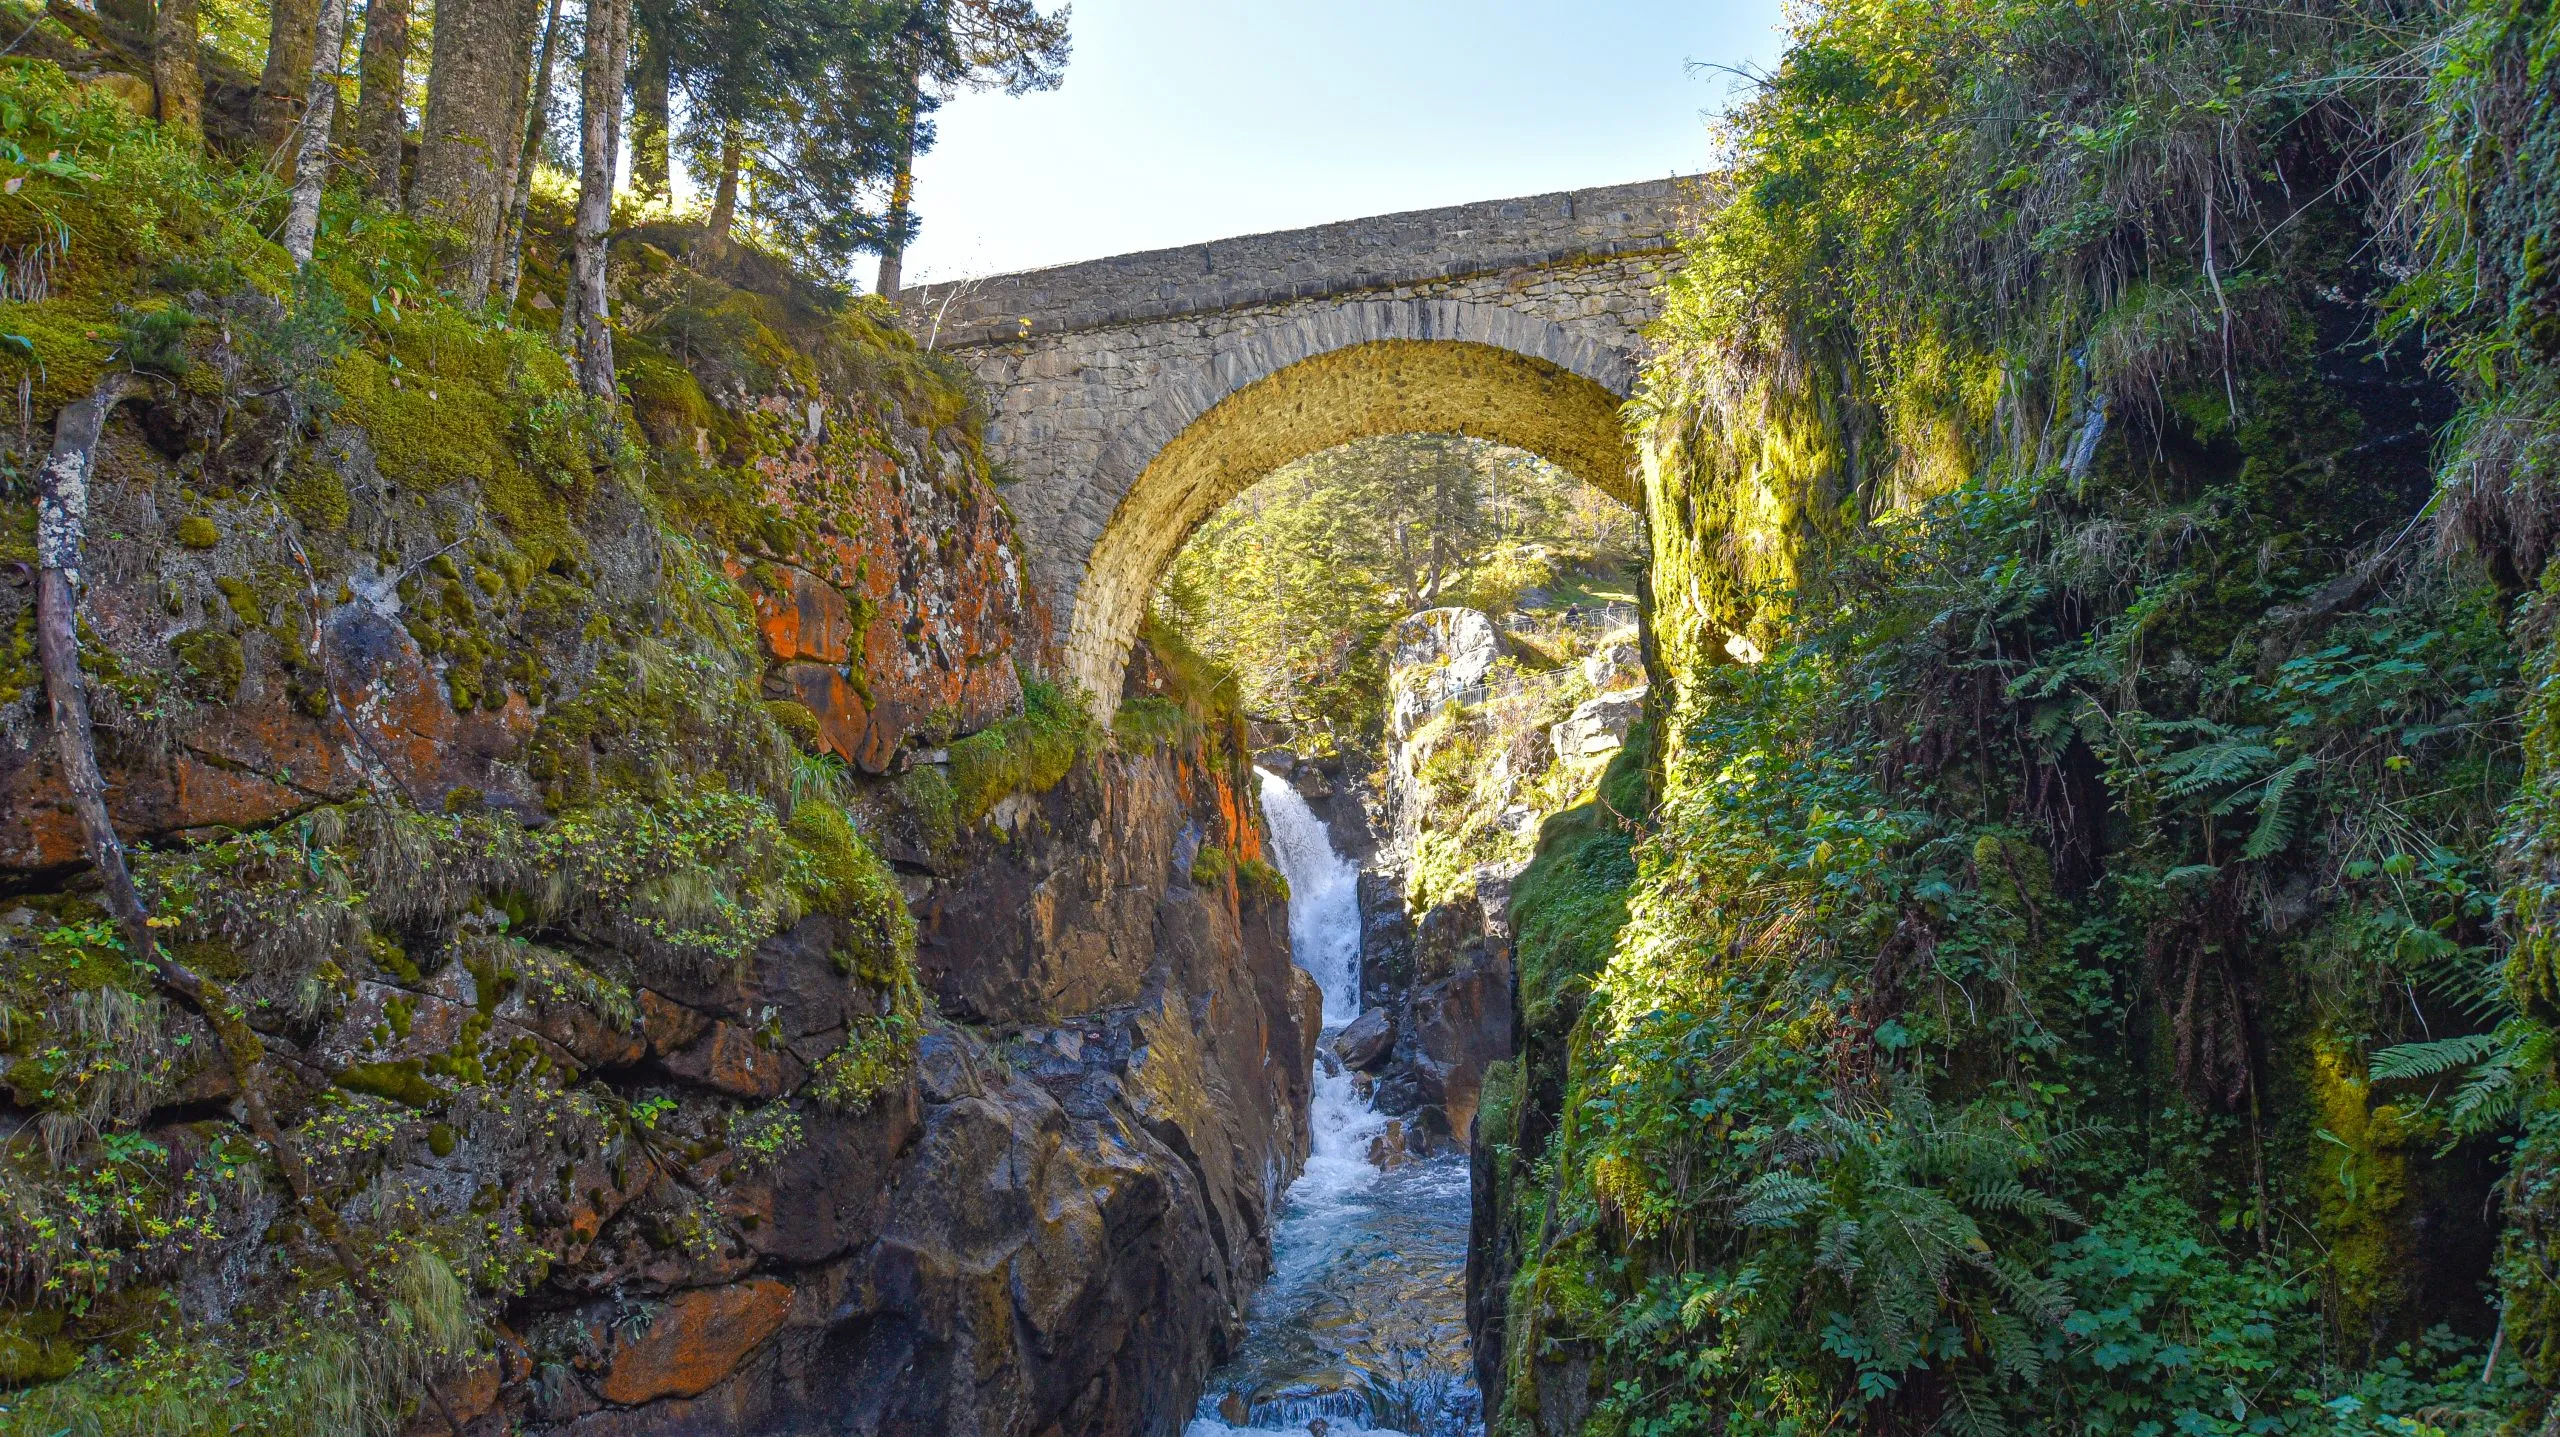 Cauterets, Frankreich - 10. Oktober 2021: Die Brücke Pont d'Espagne über den Gave de Marcadau im Pyrenäen-Nationalpark